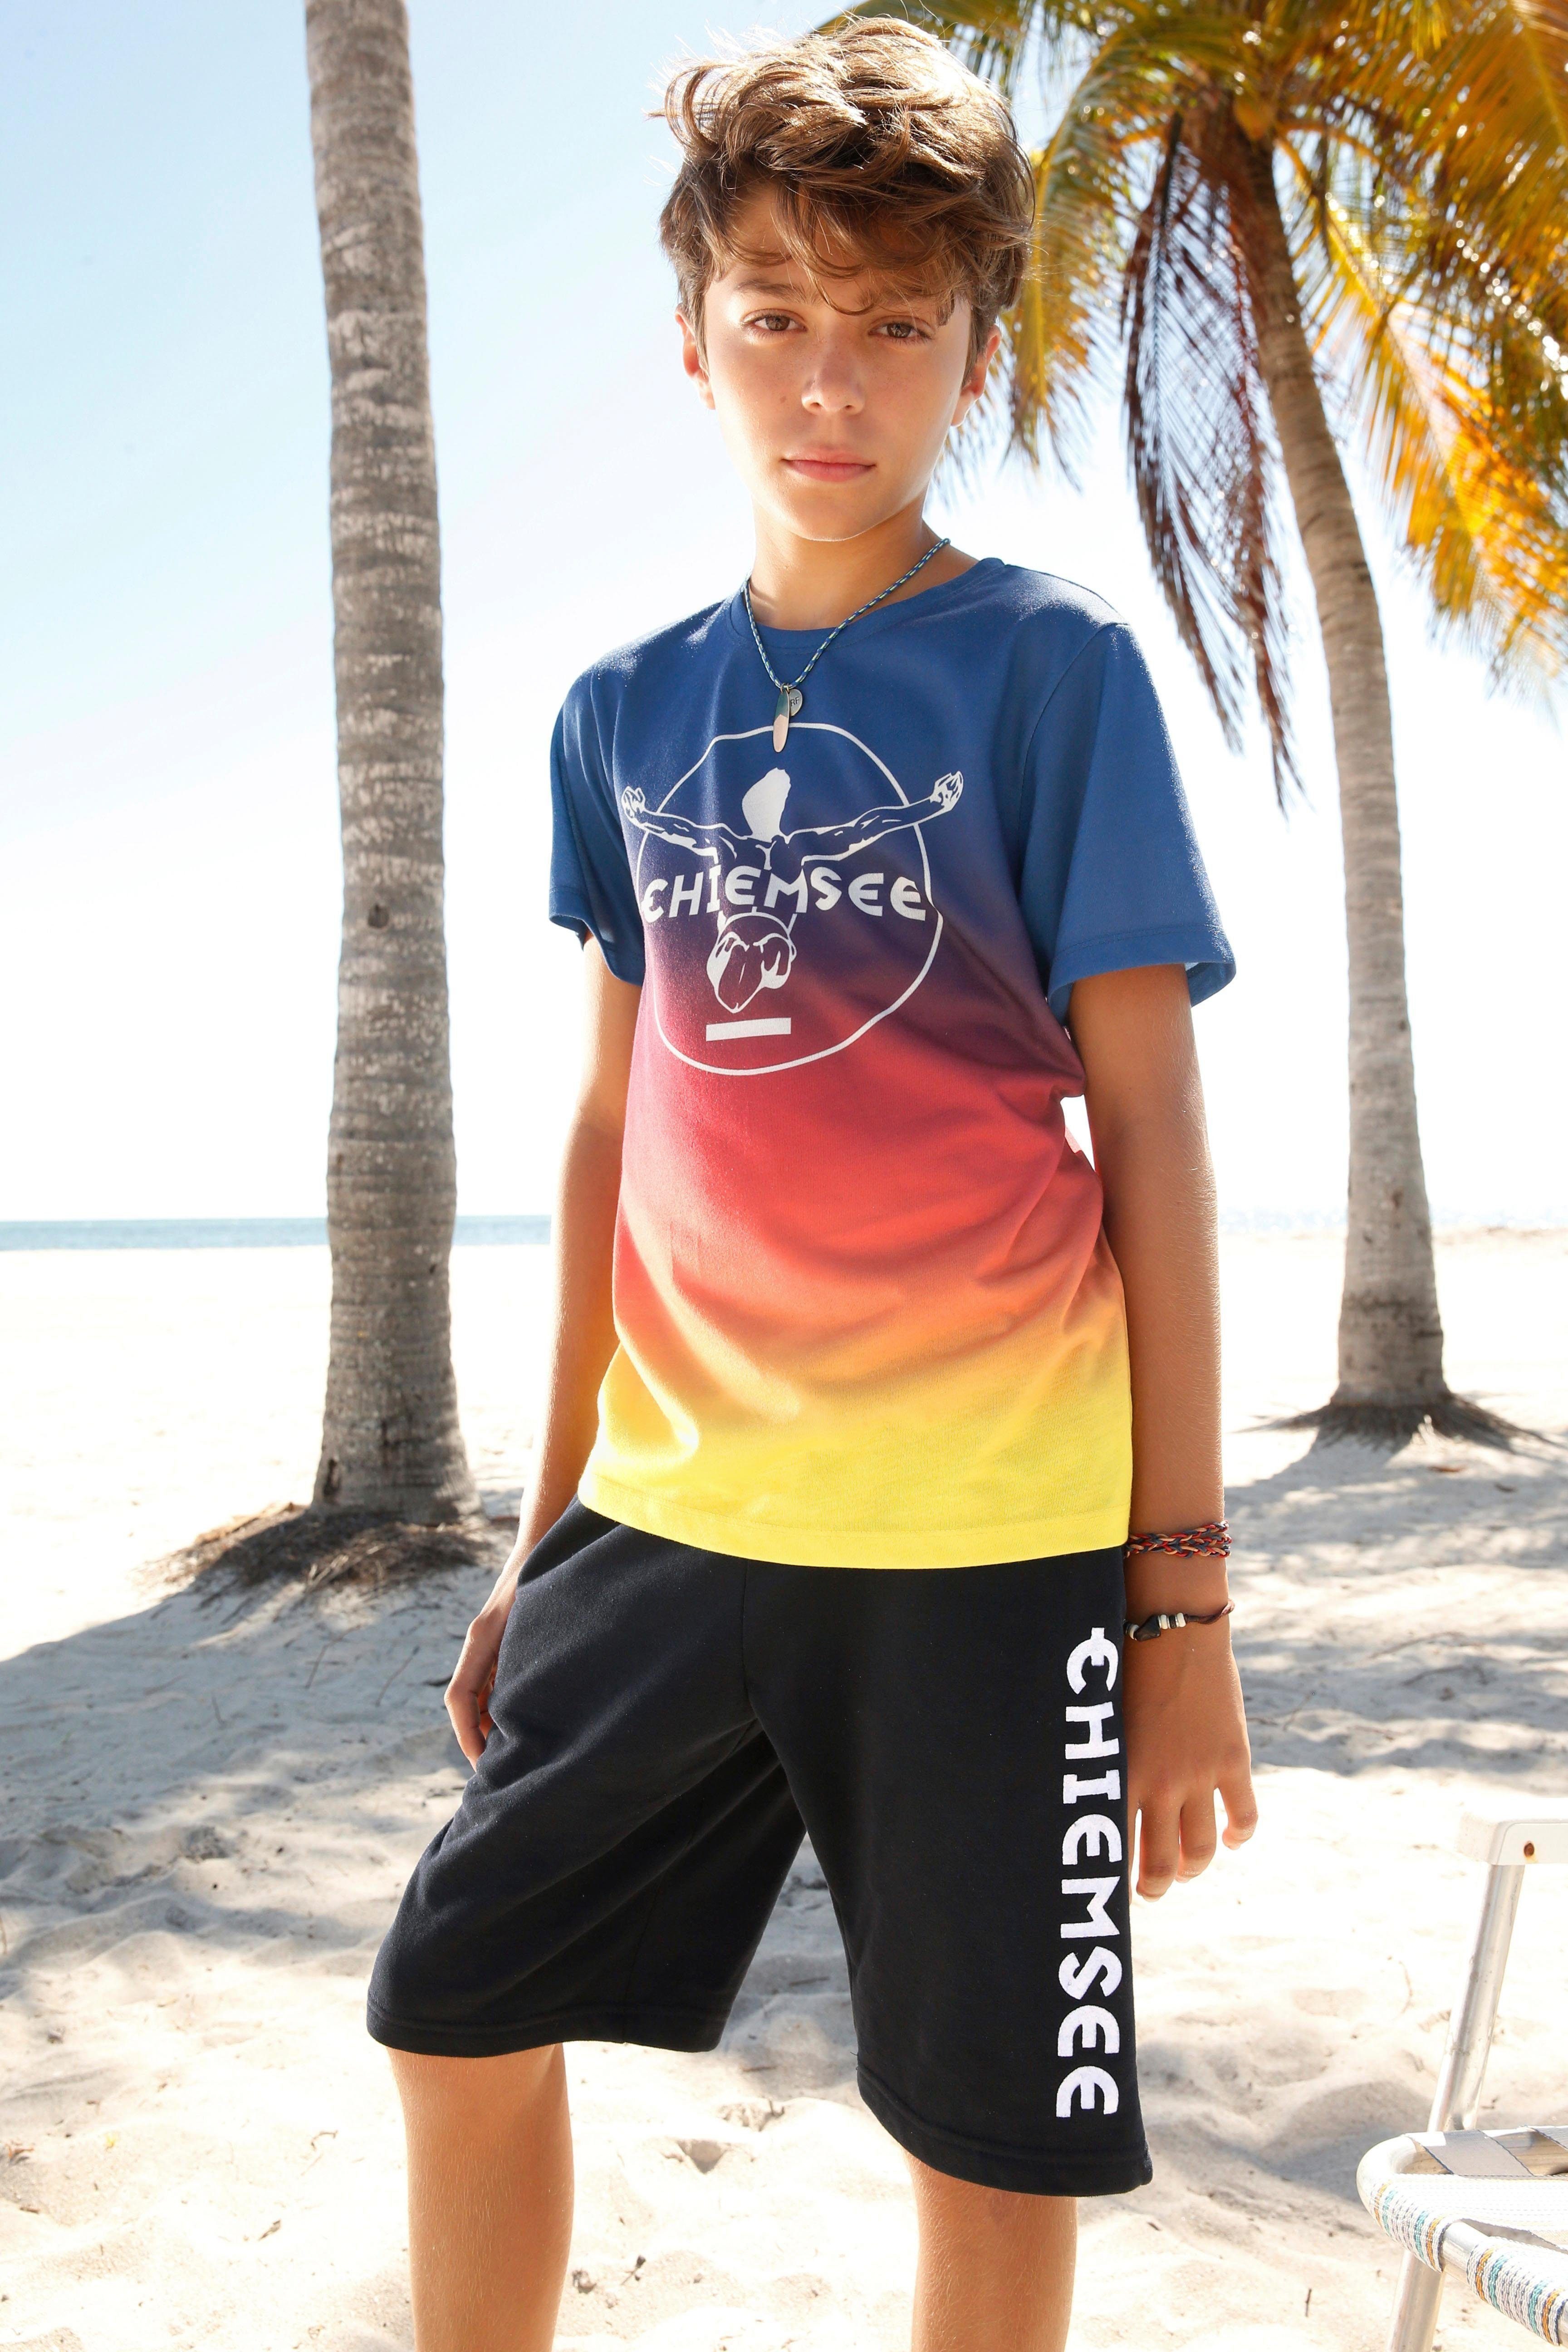 Chiemsee mit Druck T-Shirt vorn im Farbverlauf